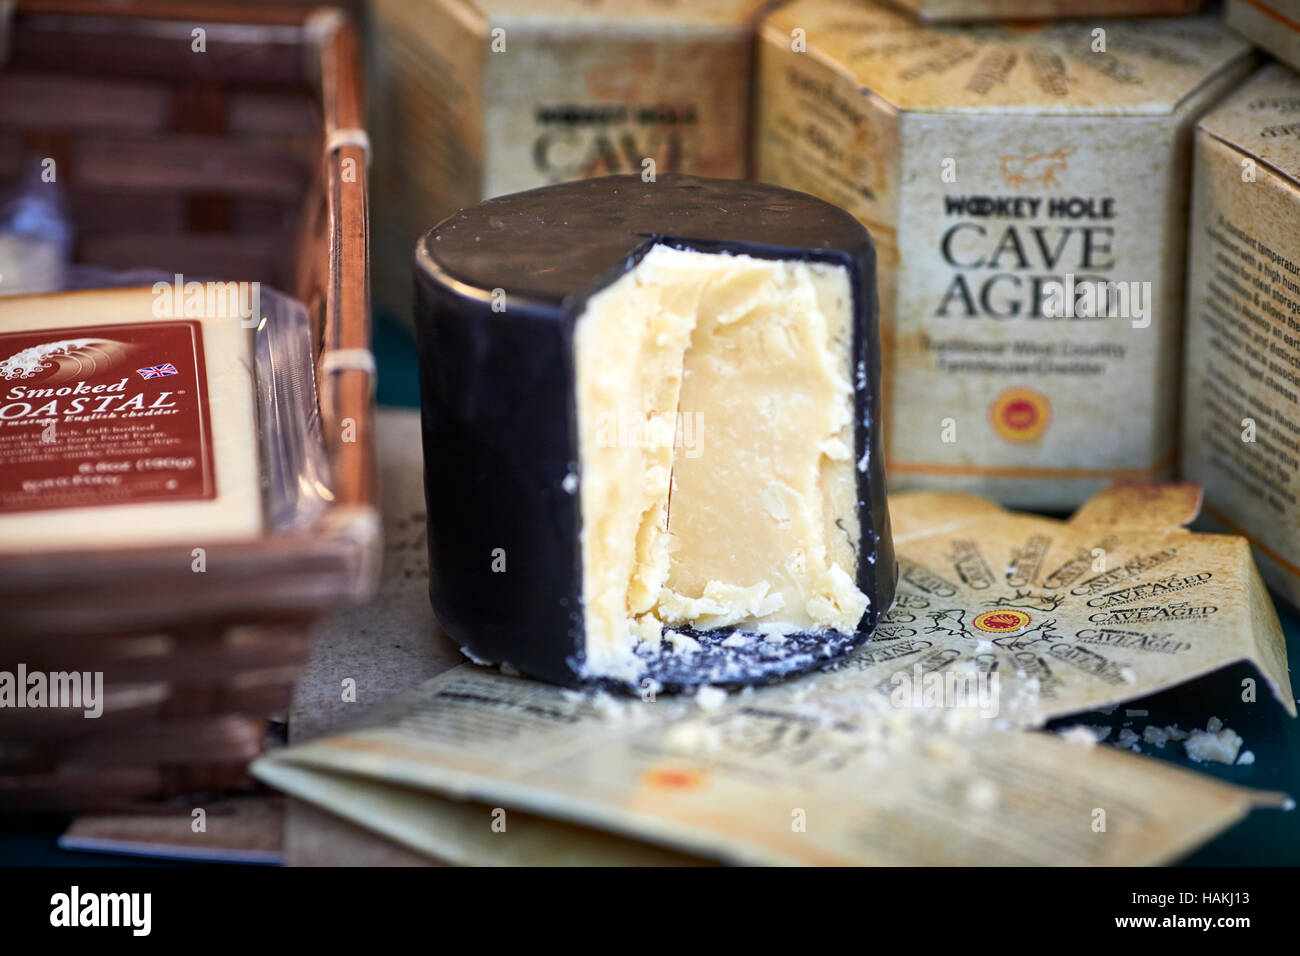 Marché artisanal de fromage coupés en couche de cire lait couvert large gamme de saveurs, textures, formes et produit laitier pour vente d'échantillons essayer acheter Cire à fromage Banque D'Images